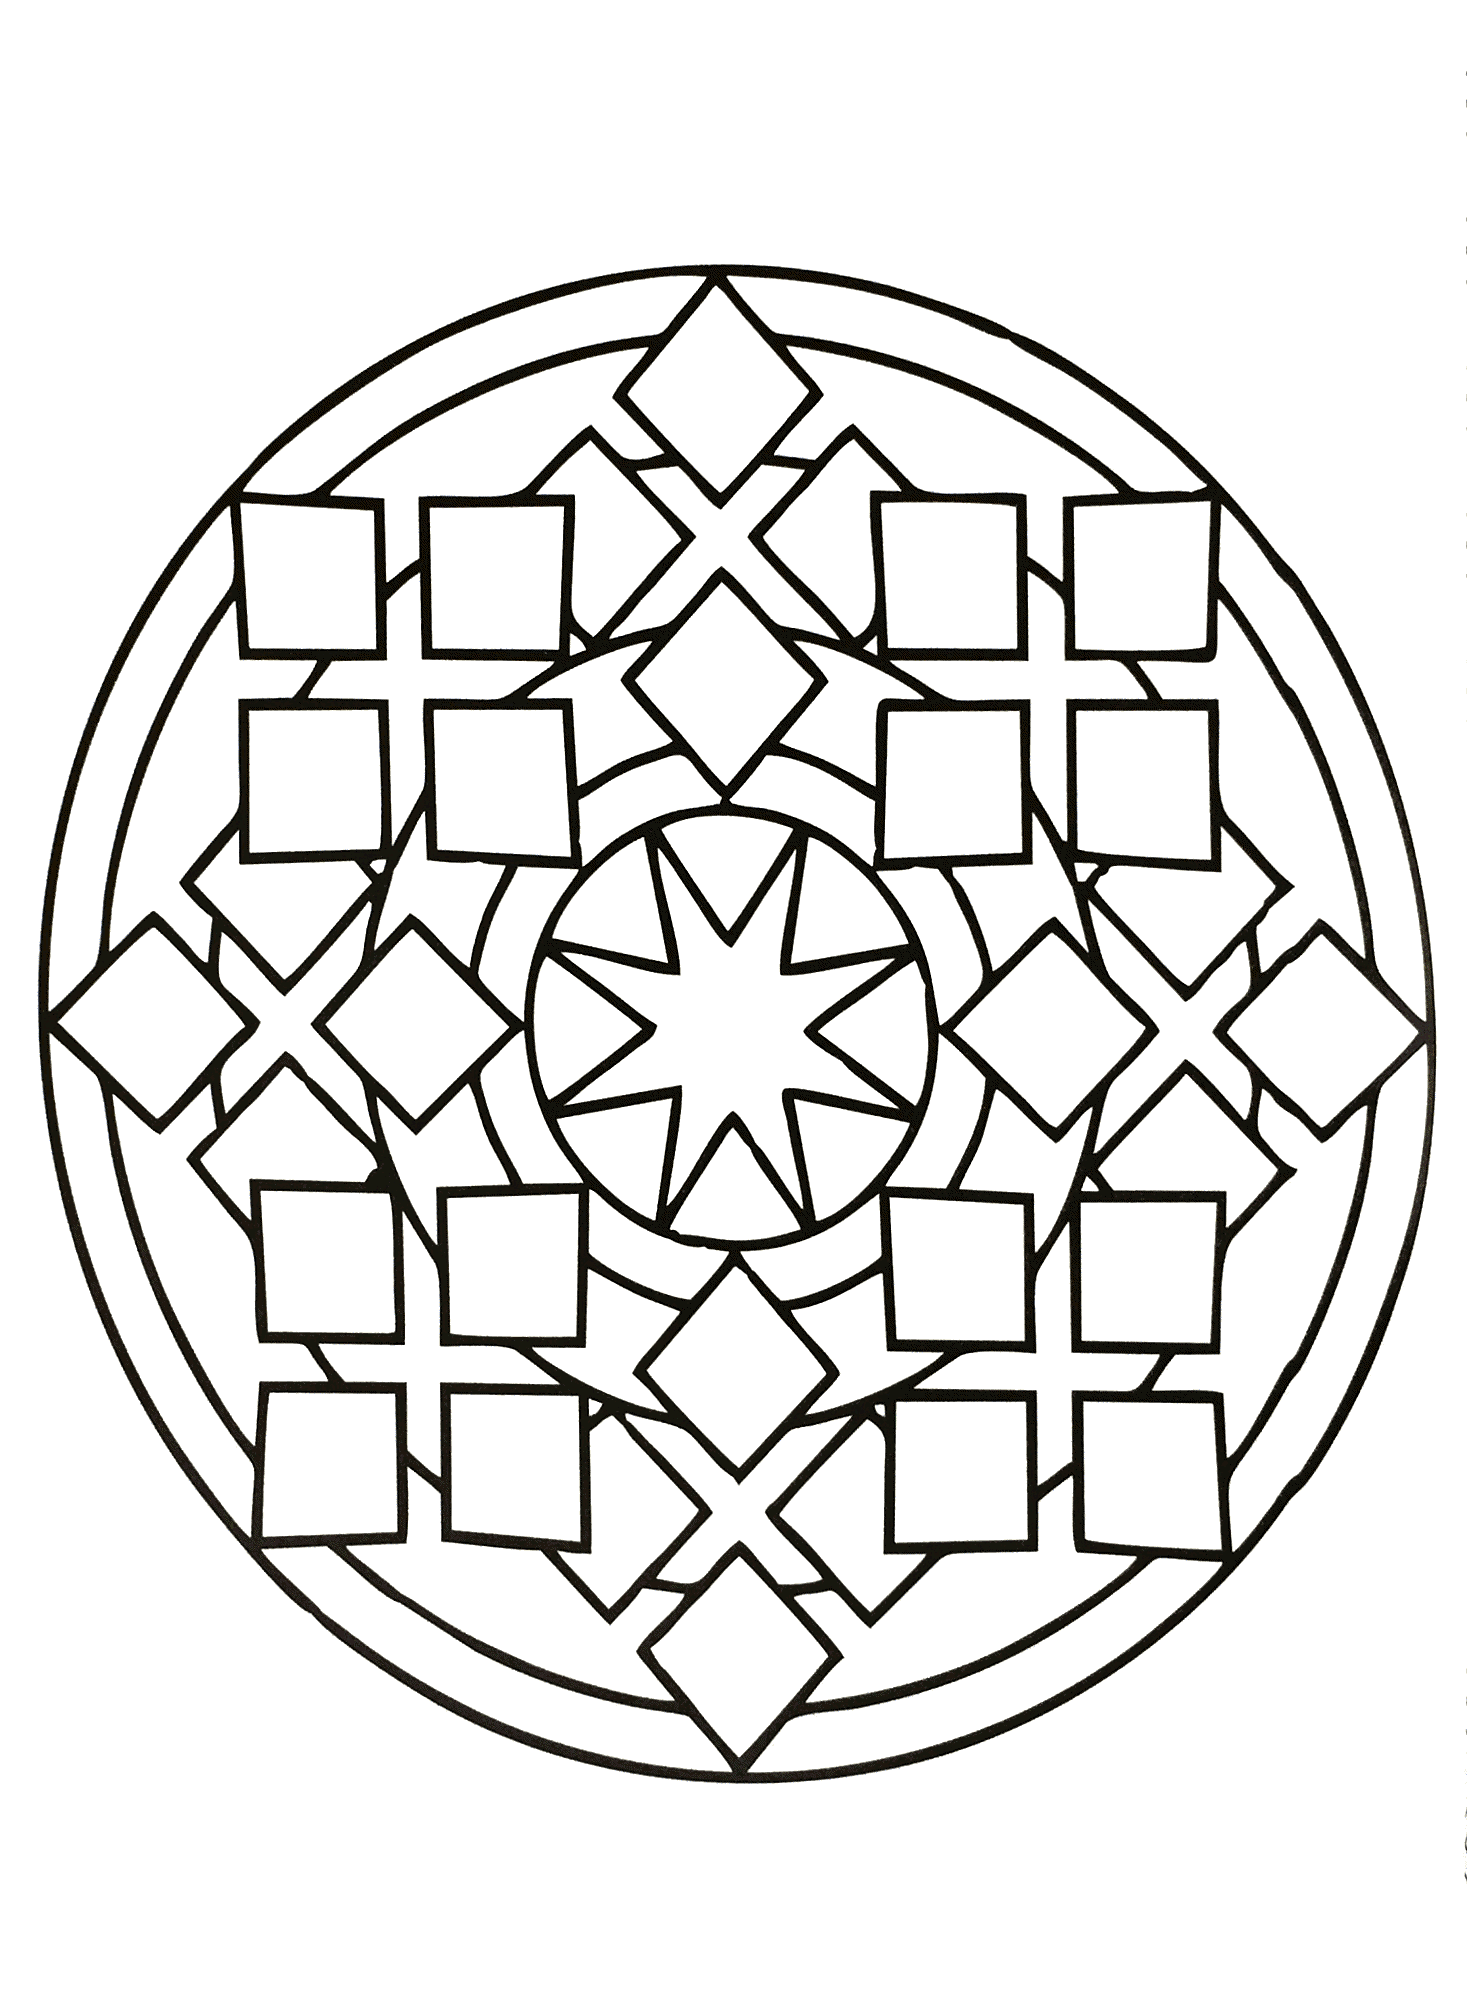 Mandala à télécharger avec différentes formes géométriques telles que des carrés, plusieurs losanges ainsi qu'une superbe étoile au centre de celui-ci.